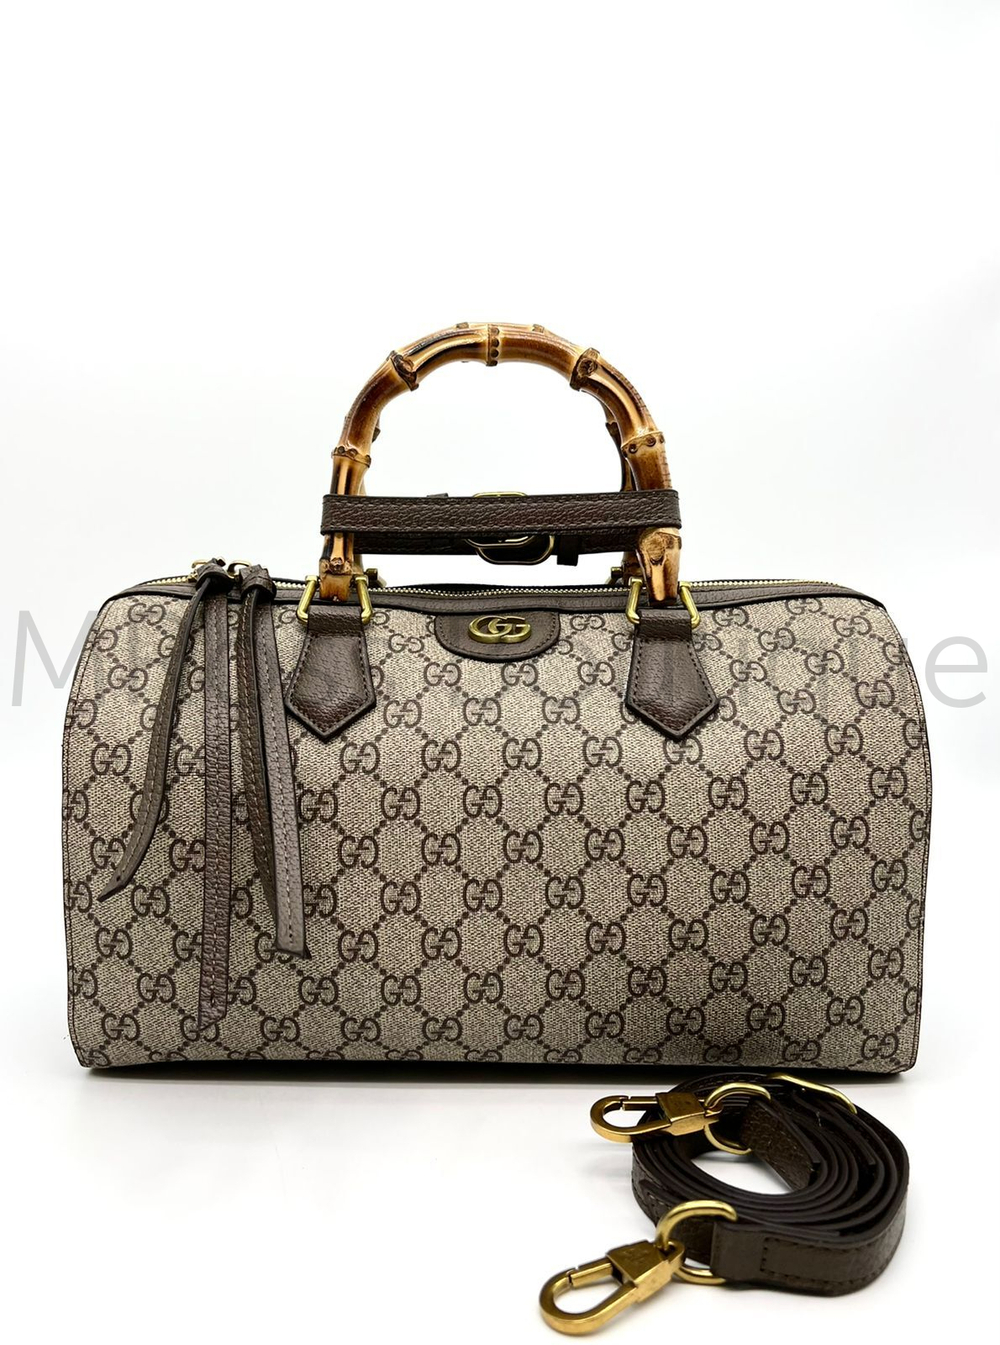 Женская вместительная сумка Speedy Gucci (Гуччи) с Съёмным плечевым ремнём